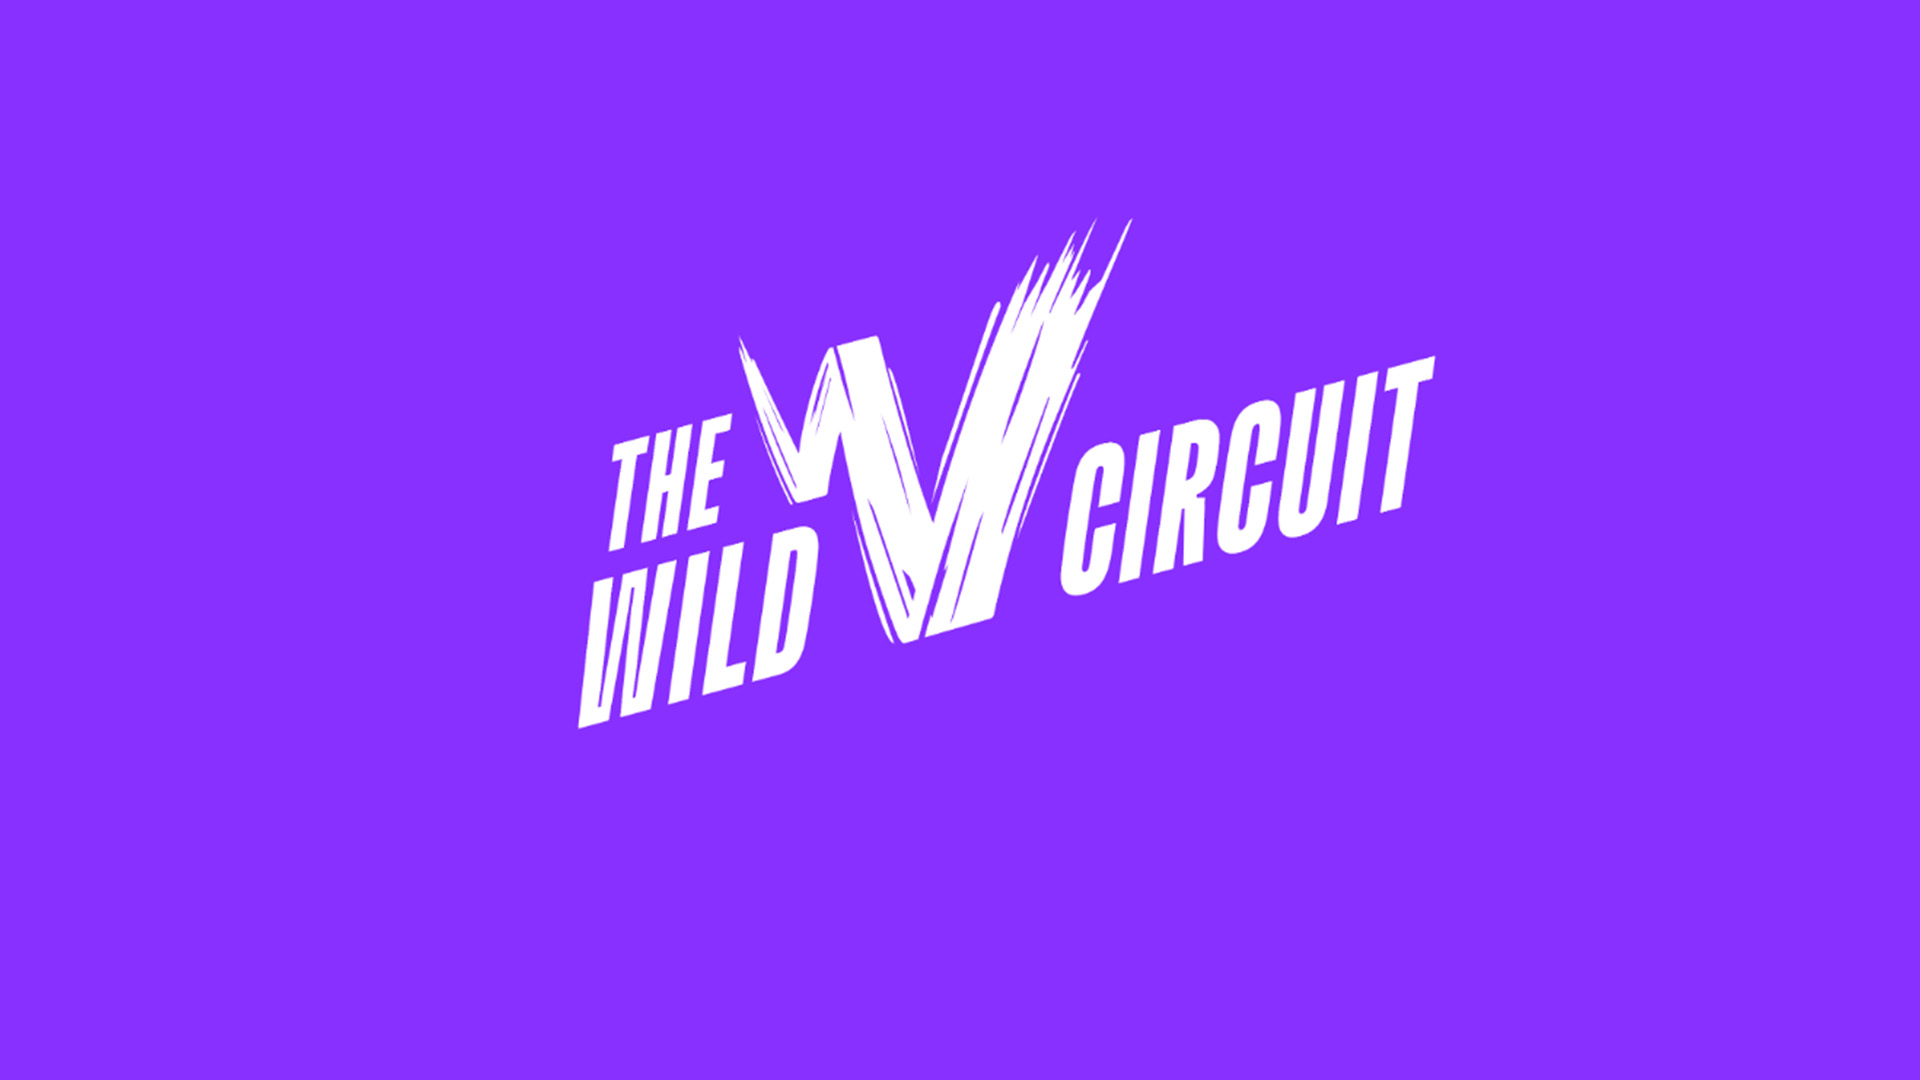 Serie de competencias The Wild Circuit